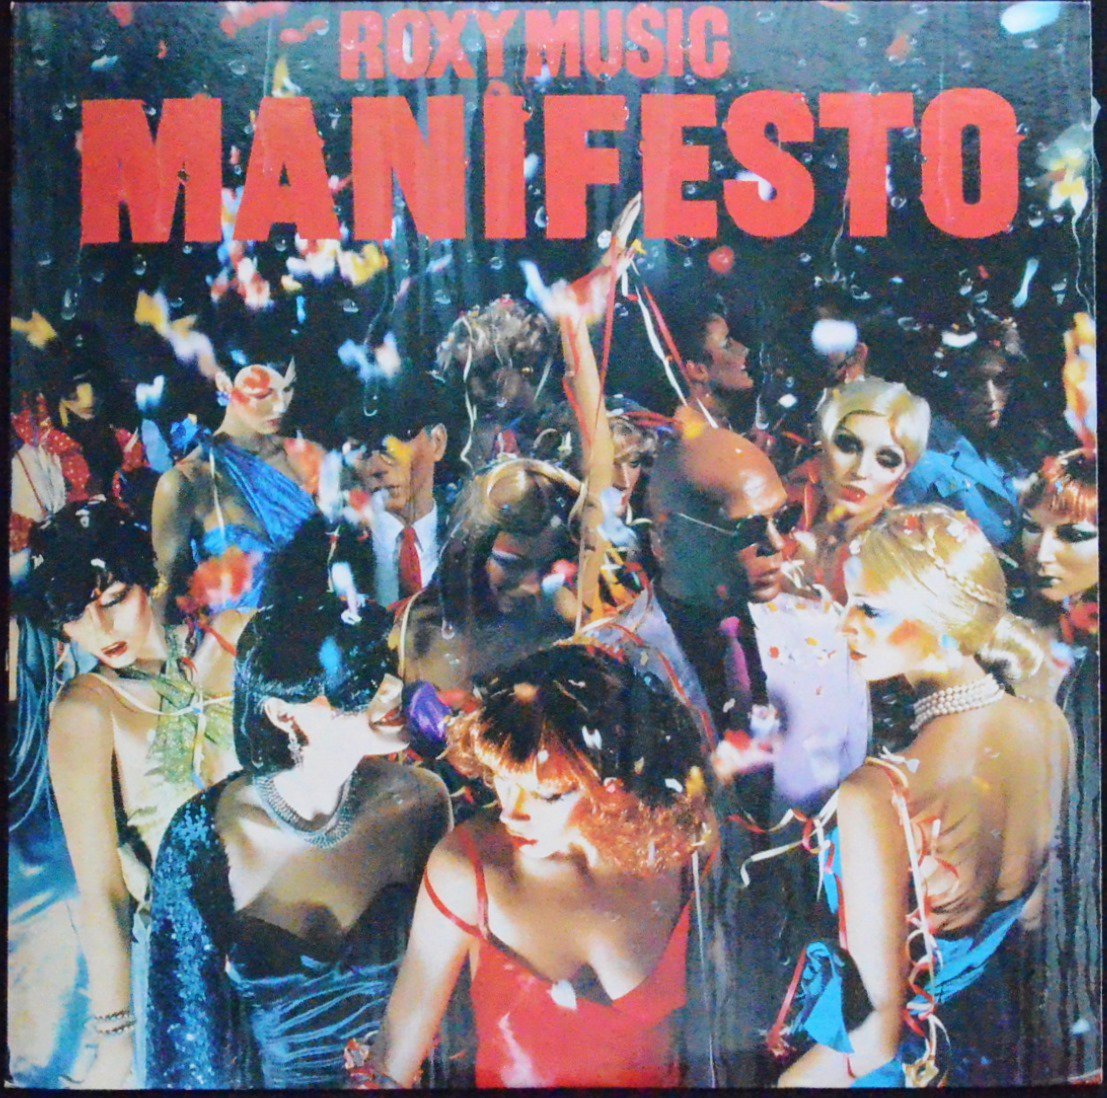 ロキシー・ミュージック ROXY MUSIC / マニフェスト MANIFESTO (LP